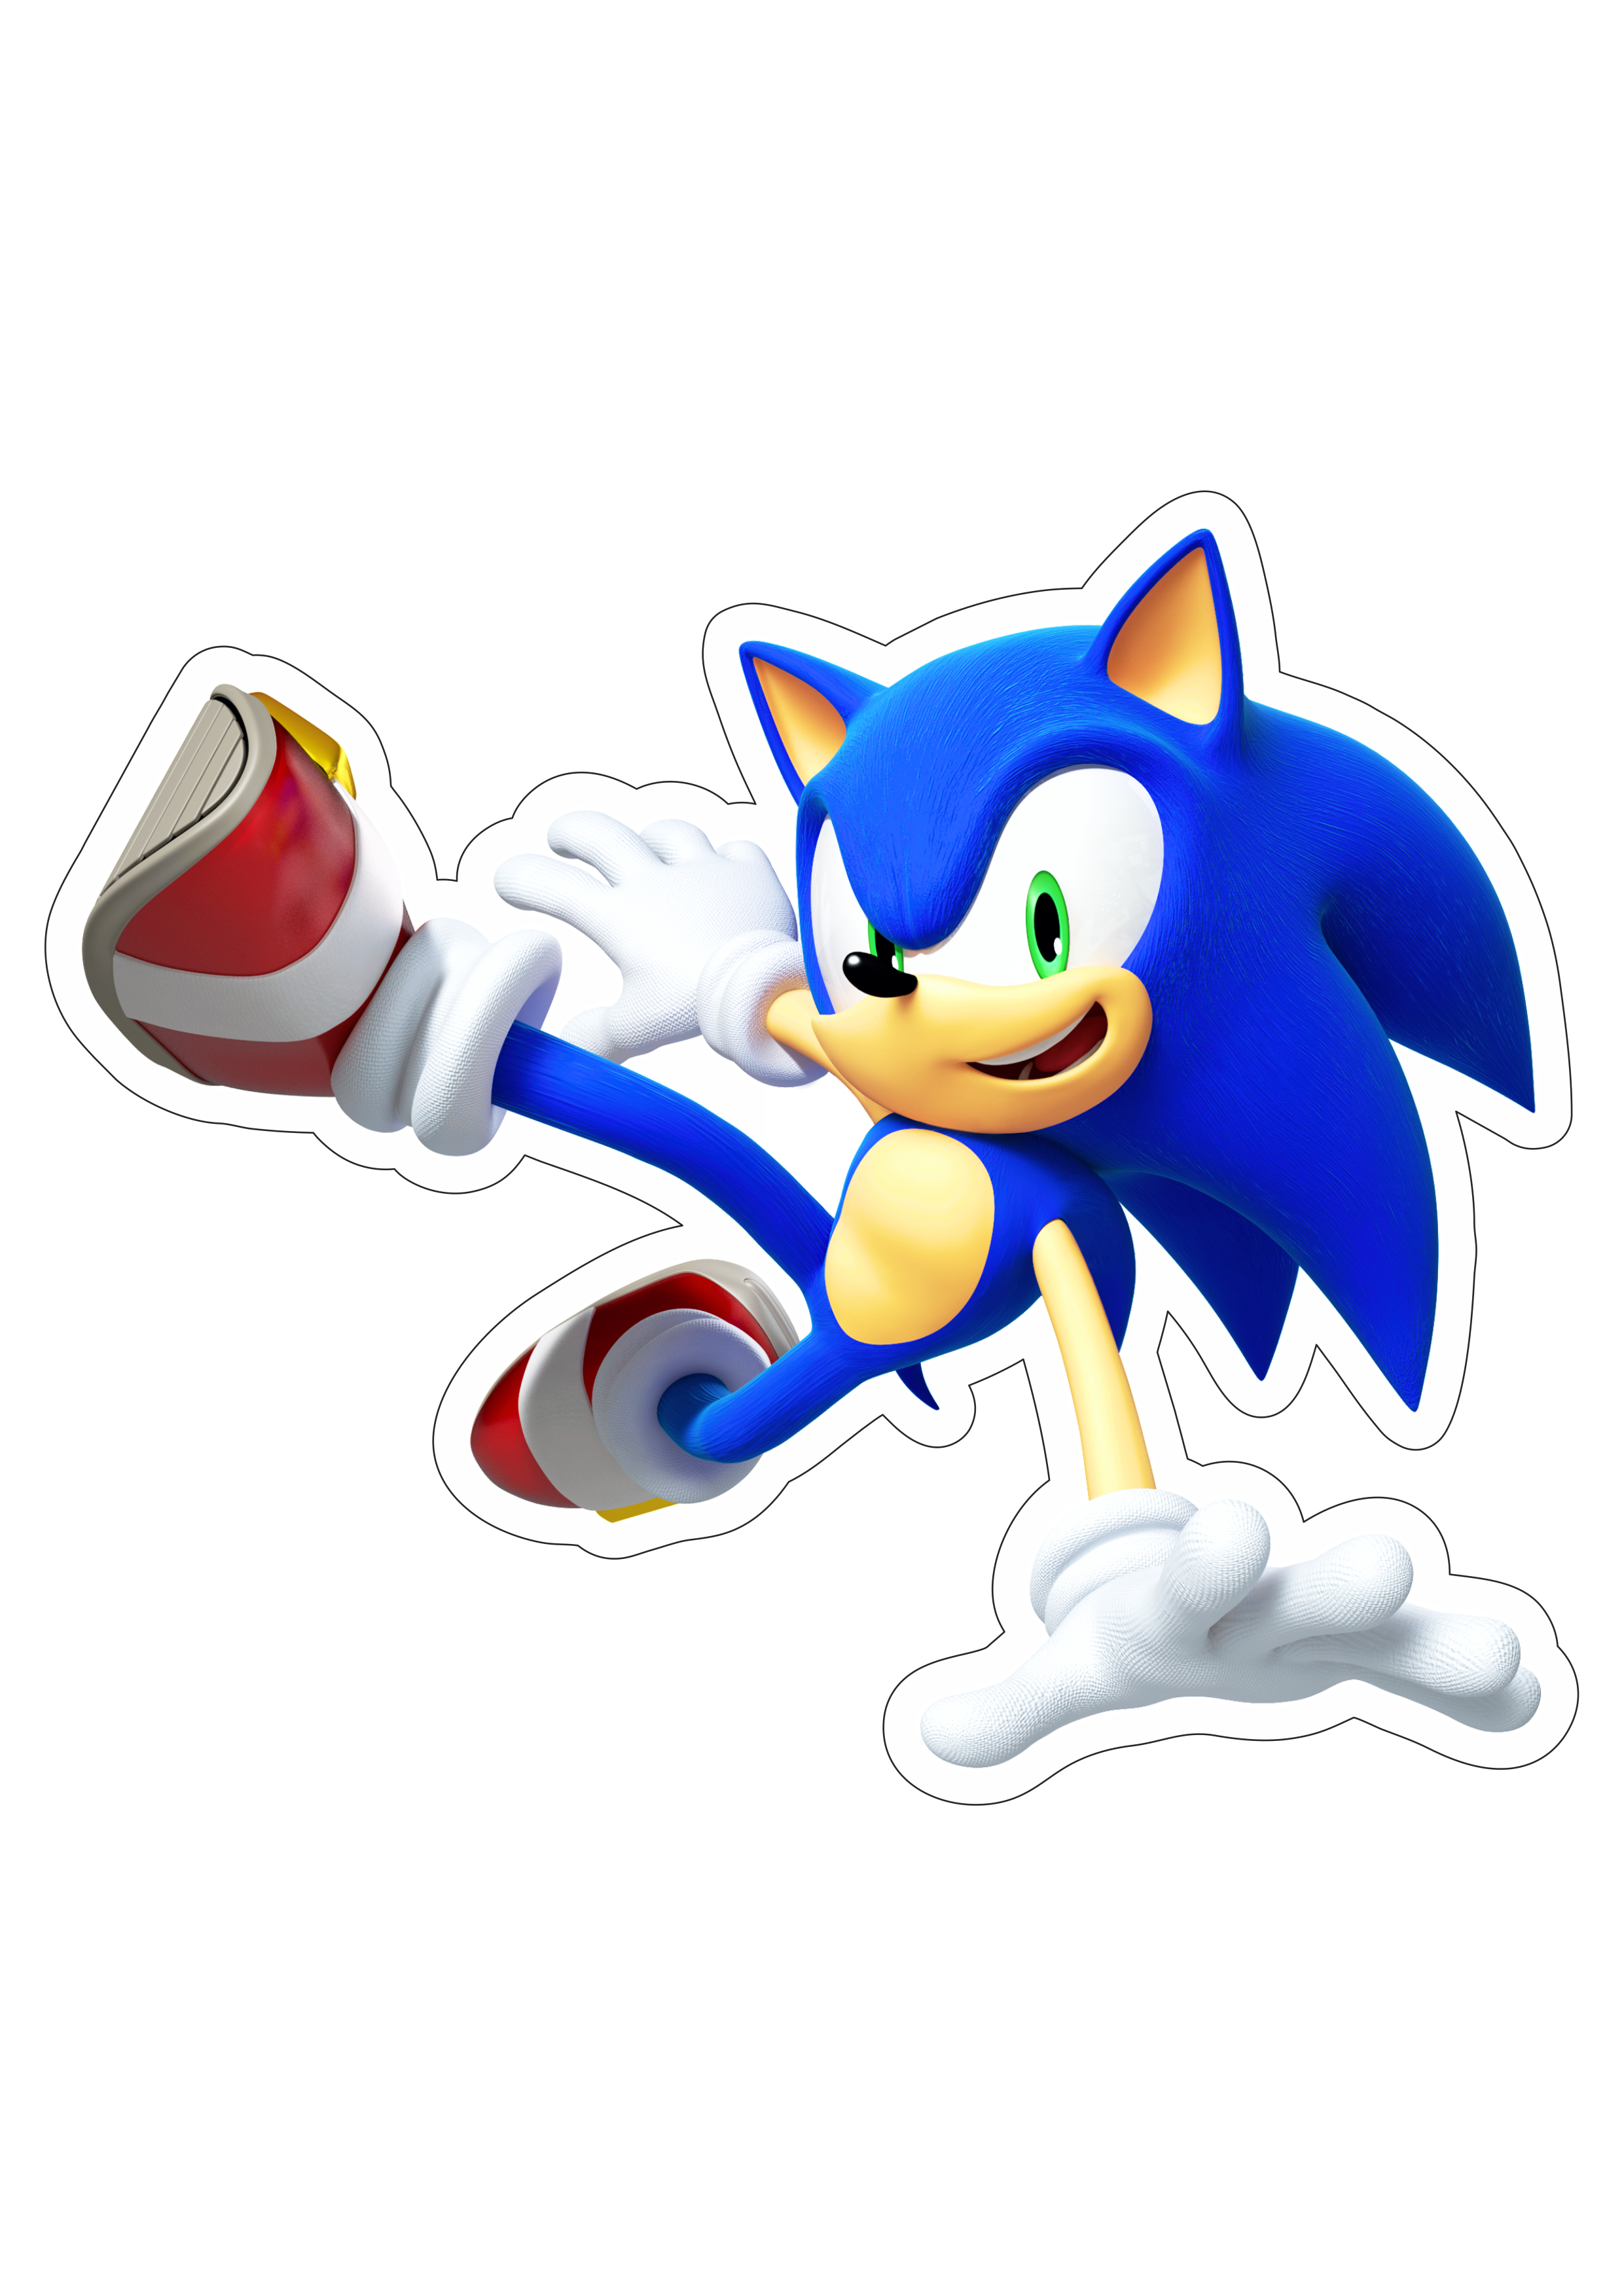 Sonic the hedgehog ouriço personagem de game aventura velocidade infantil artes gráficas imagem sem fundo com contorno png